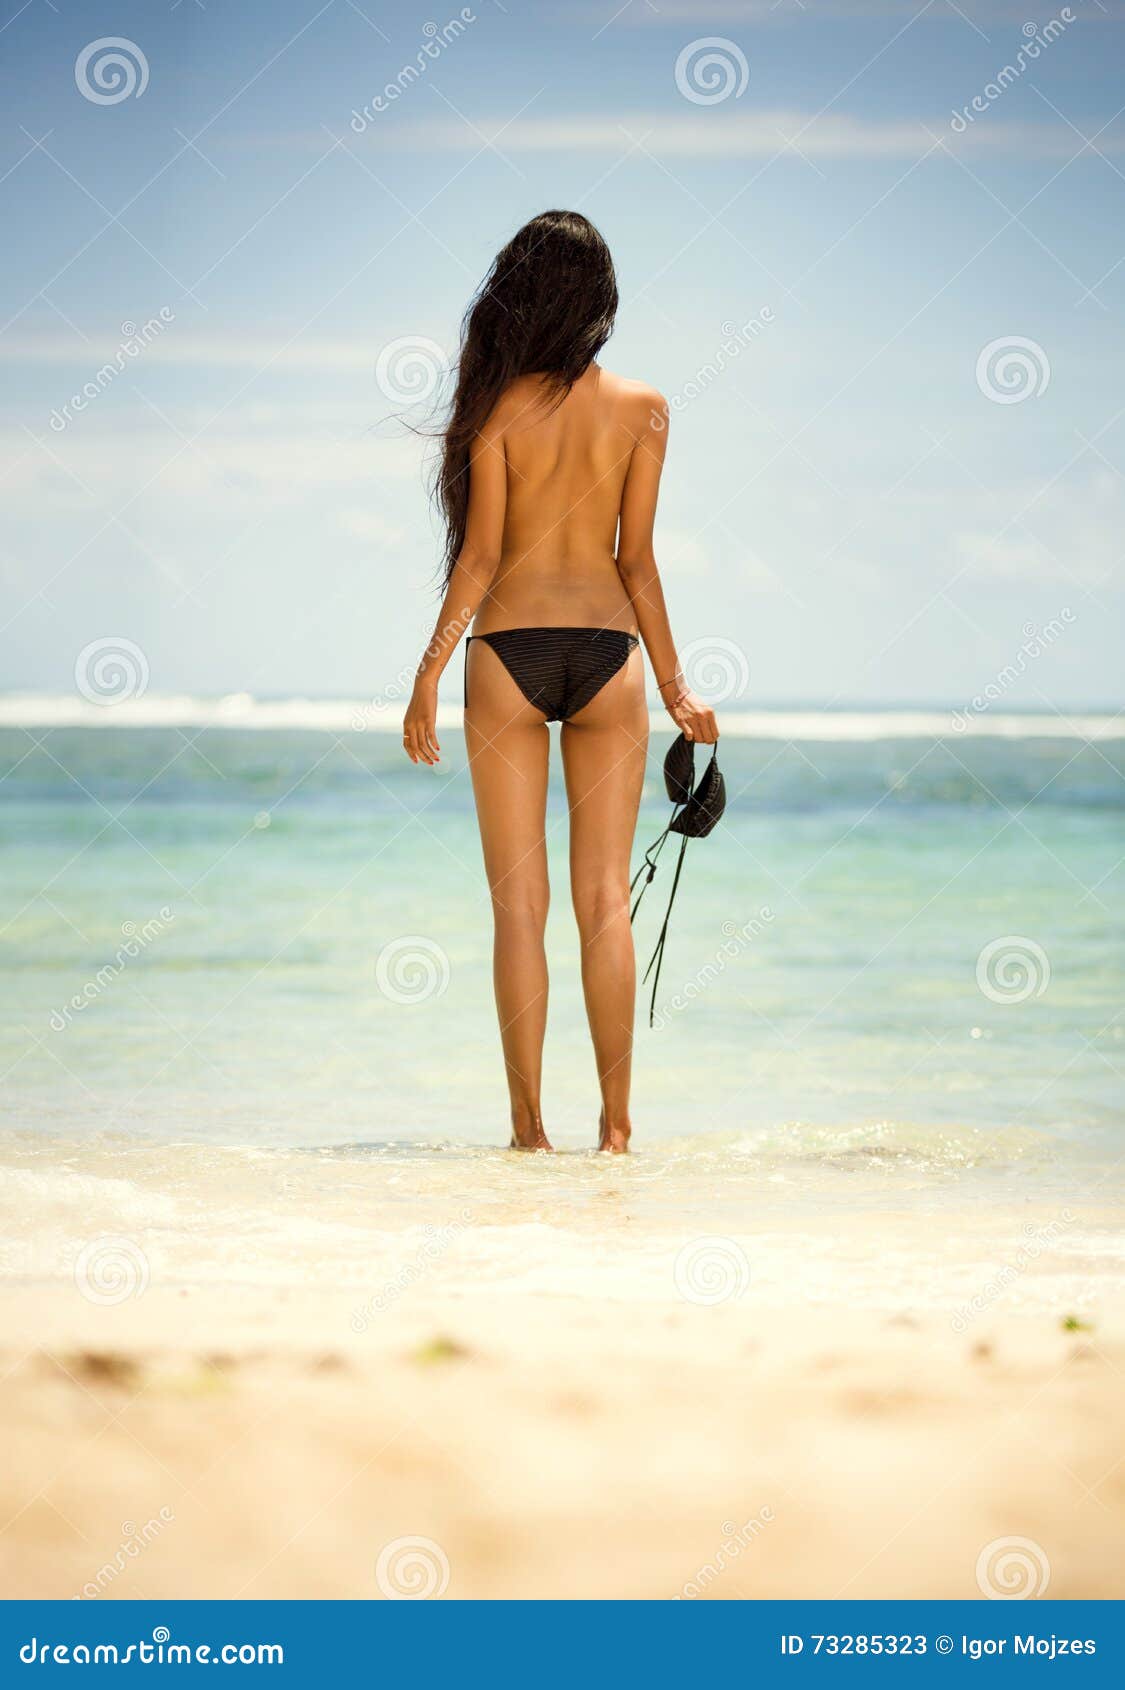 Olivia Wilde Nude Beach